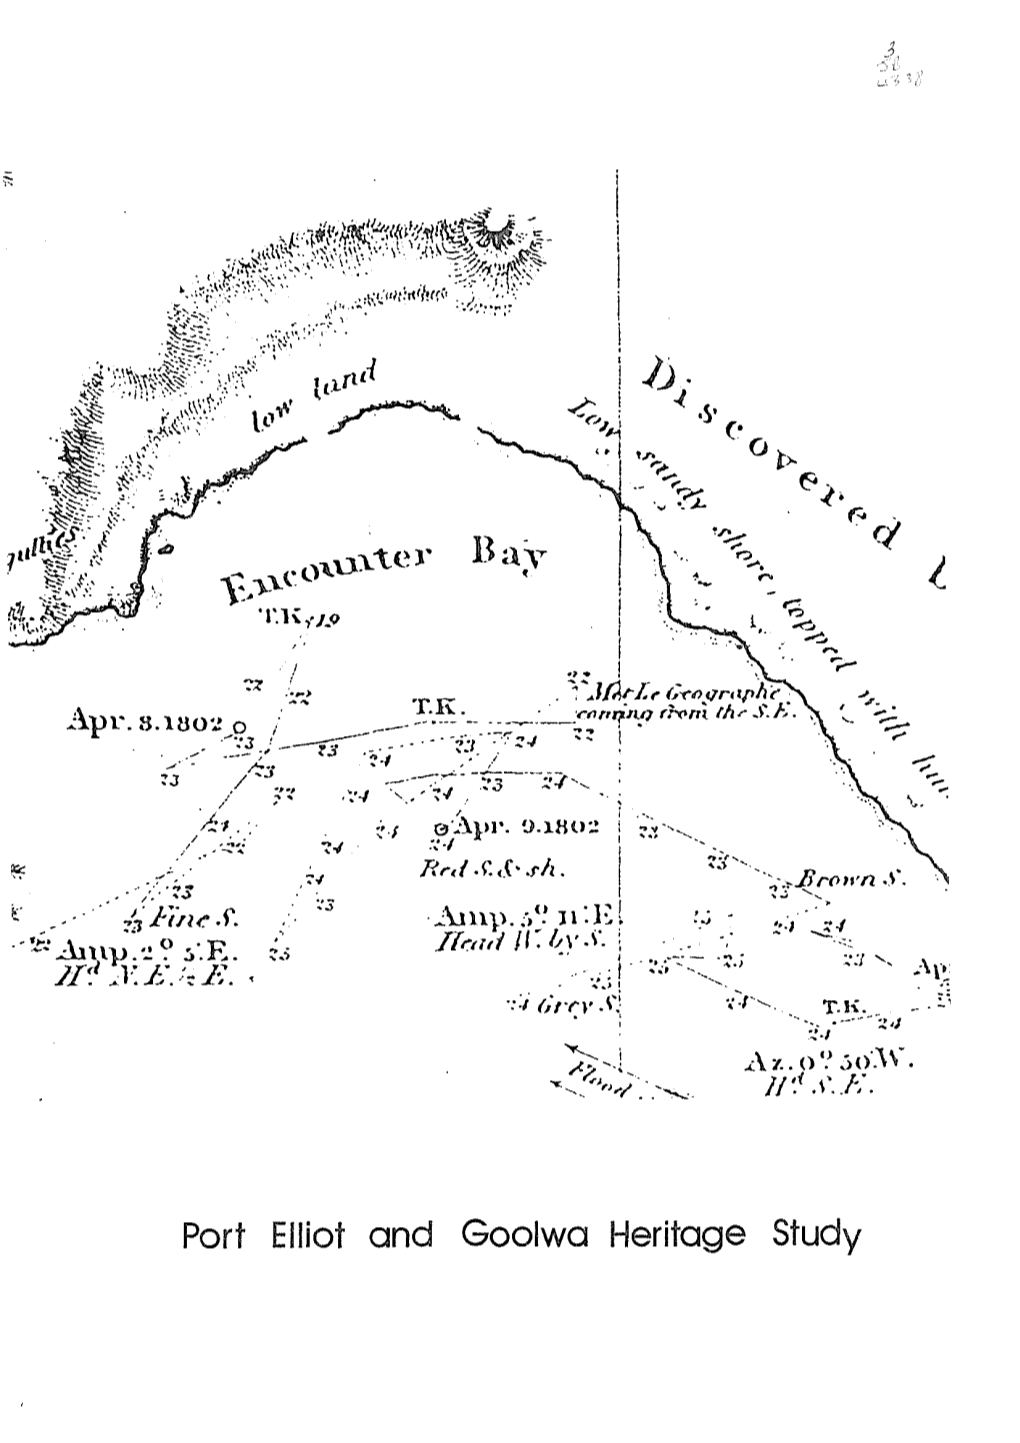 Port Elliot and Goolwa Heritage Study (1981)